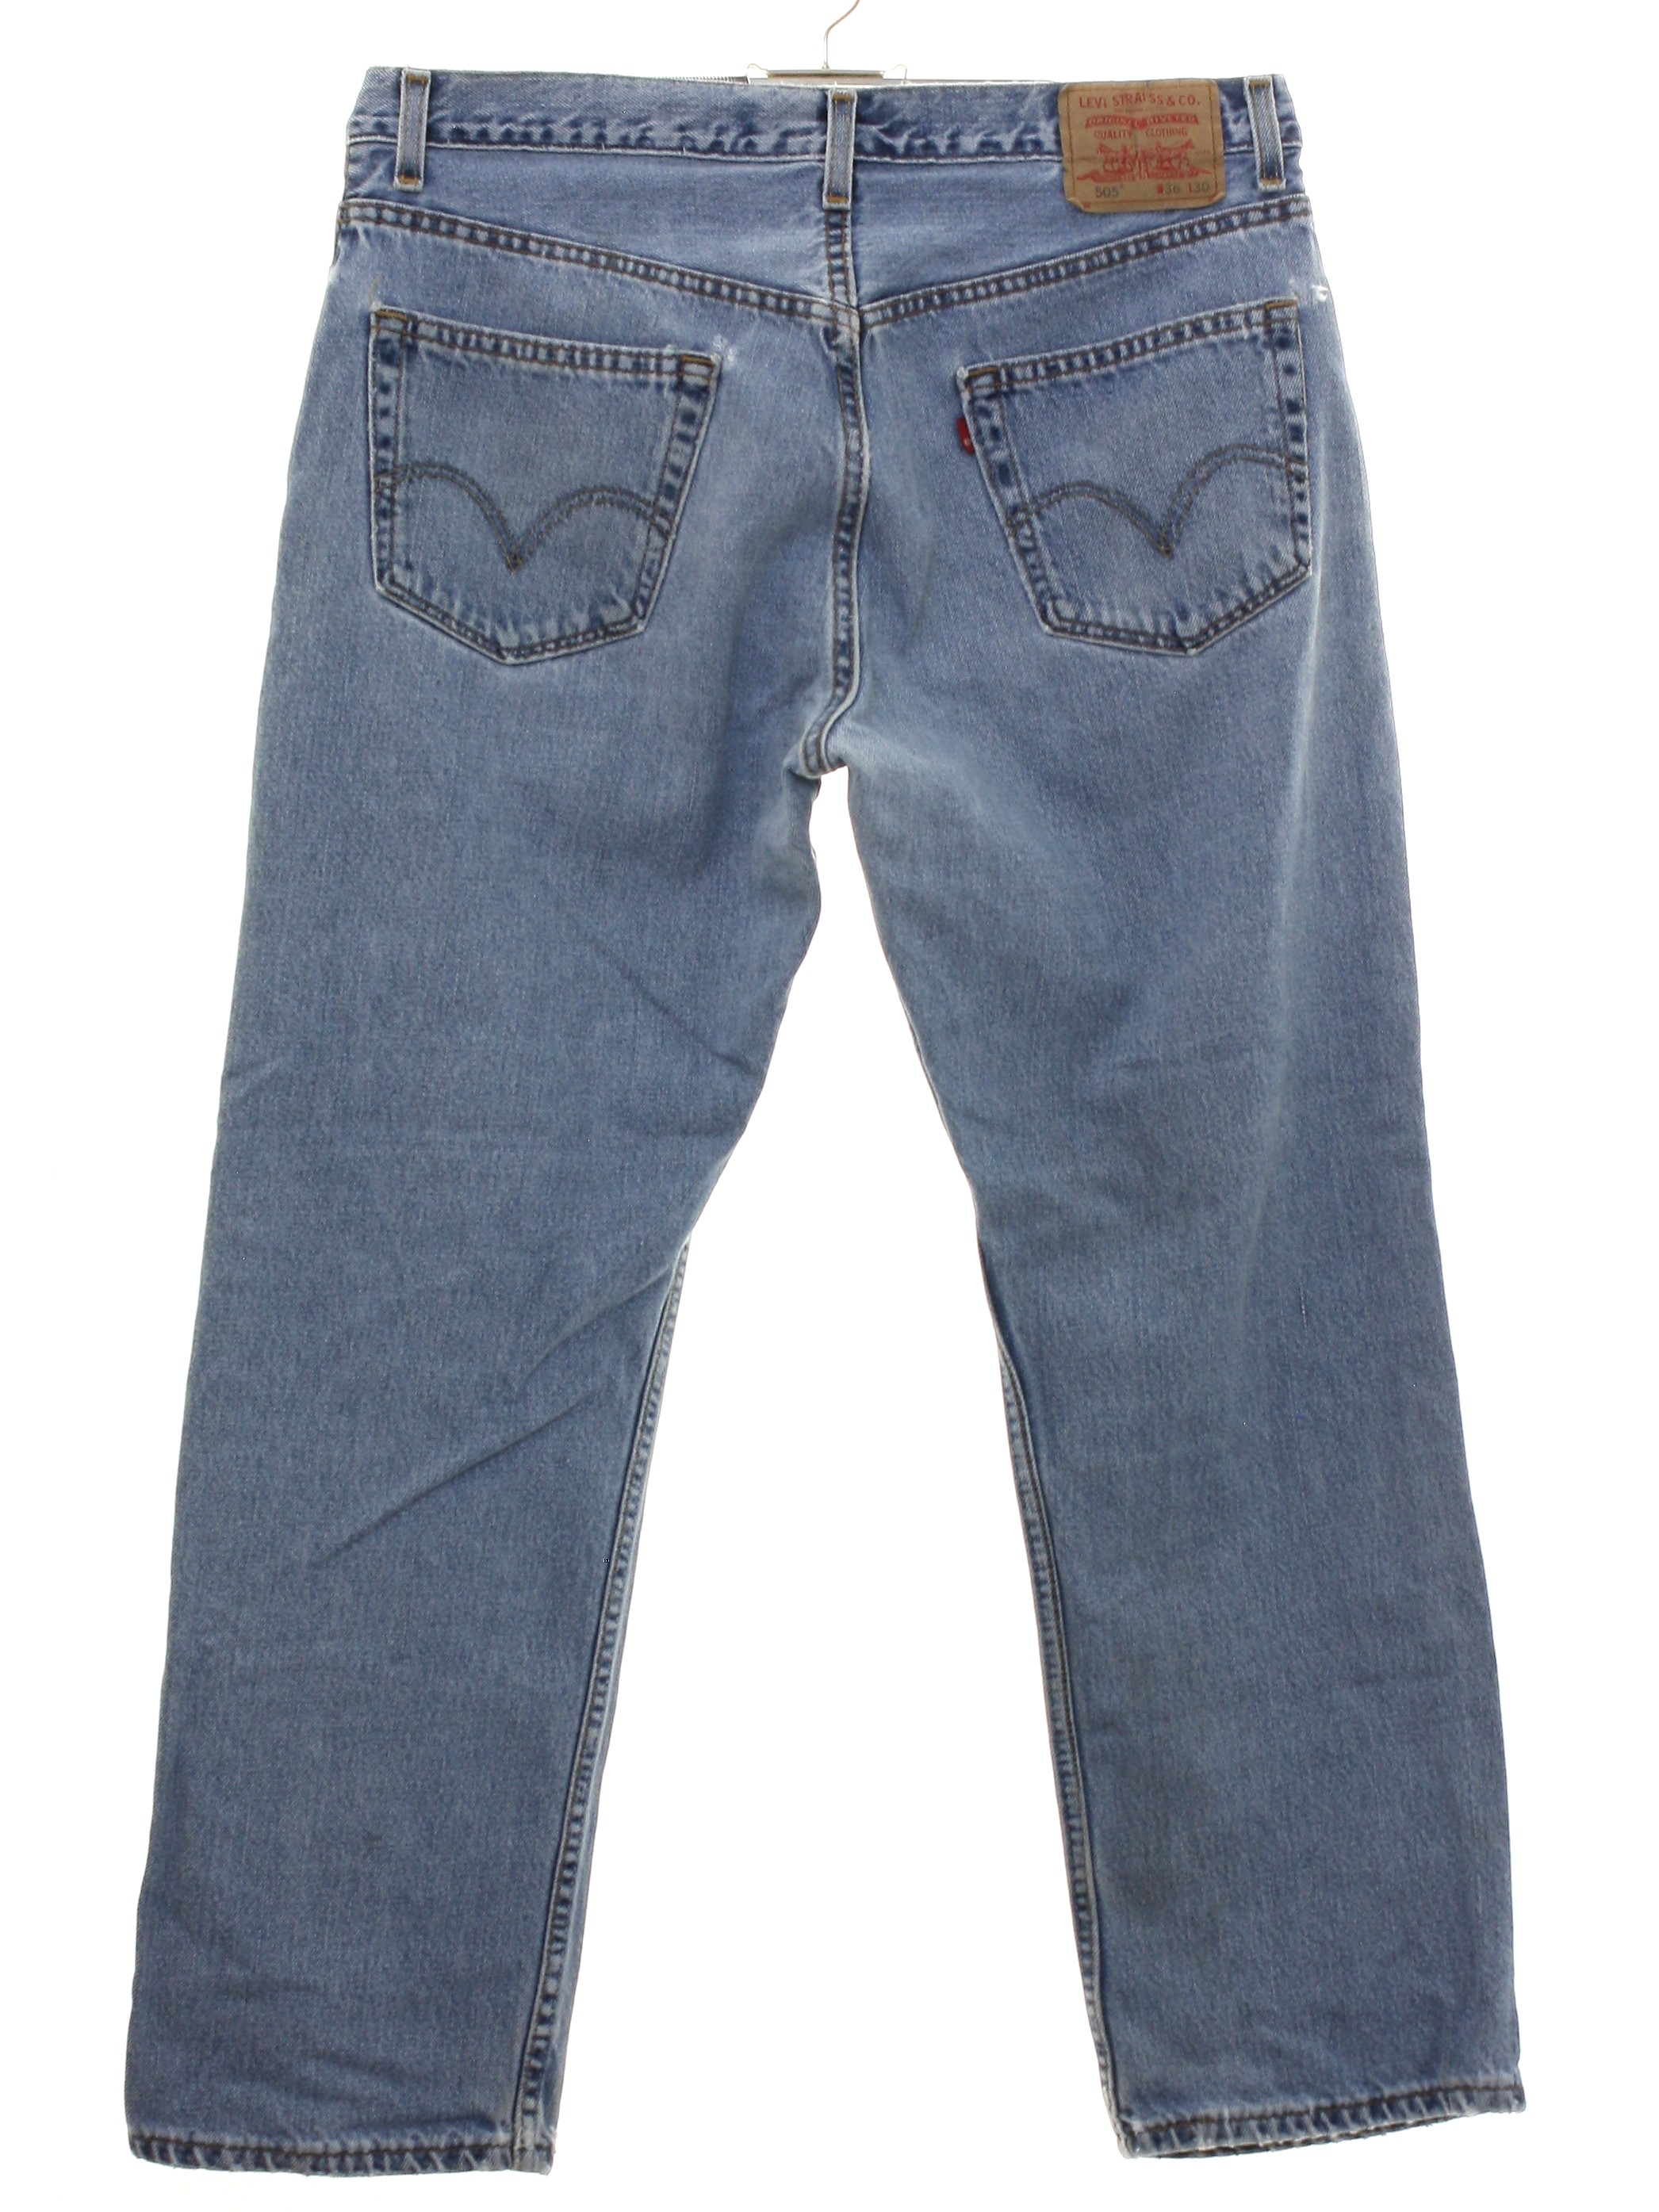 Vintage Levis 505 90's Pants: Late 90s -Levis 505- Mens faded blue ...